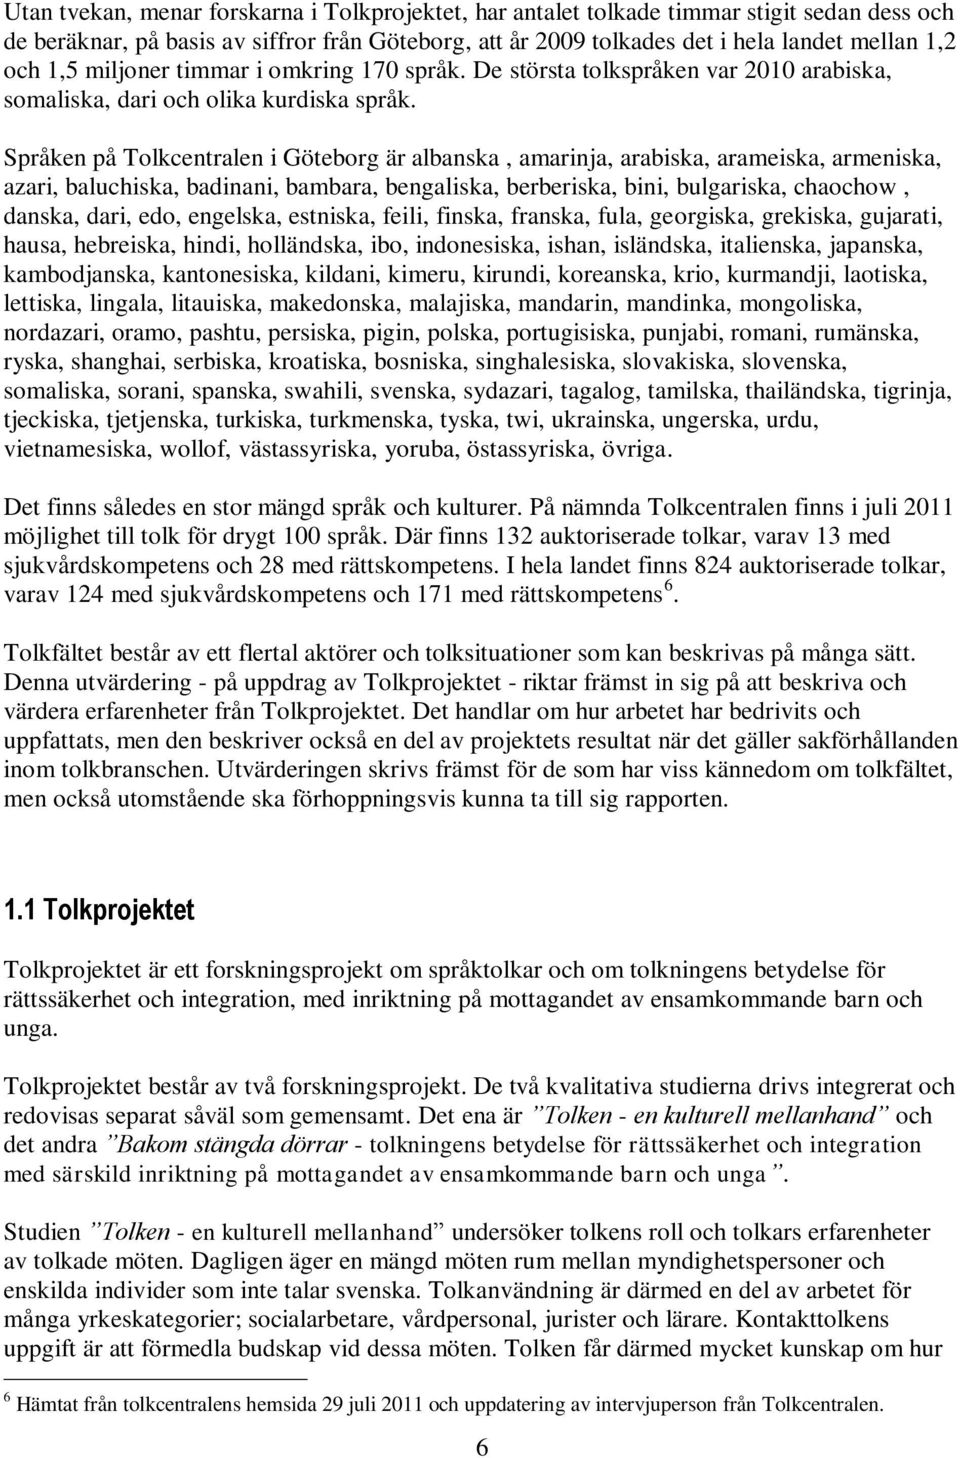 Språken på Tolkcentralen i Göteborg är albanska, amarinja, arabiska, arameiska, armeniska, azari, baluchiska, badinani, bambara, bengaliska, berberiska, bini, bulgariska, chaochow, danska, dari, edo,